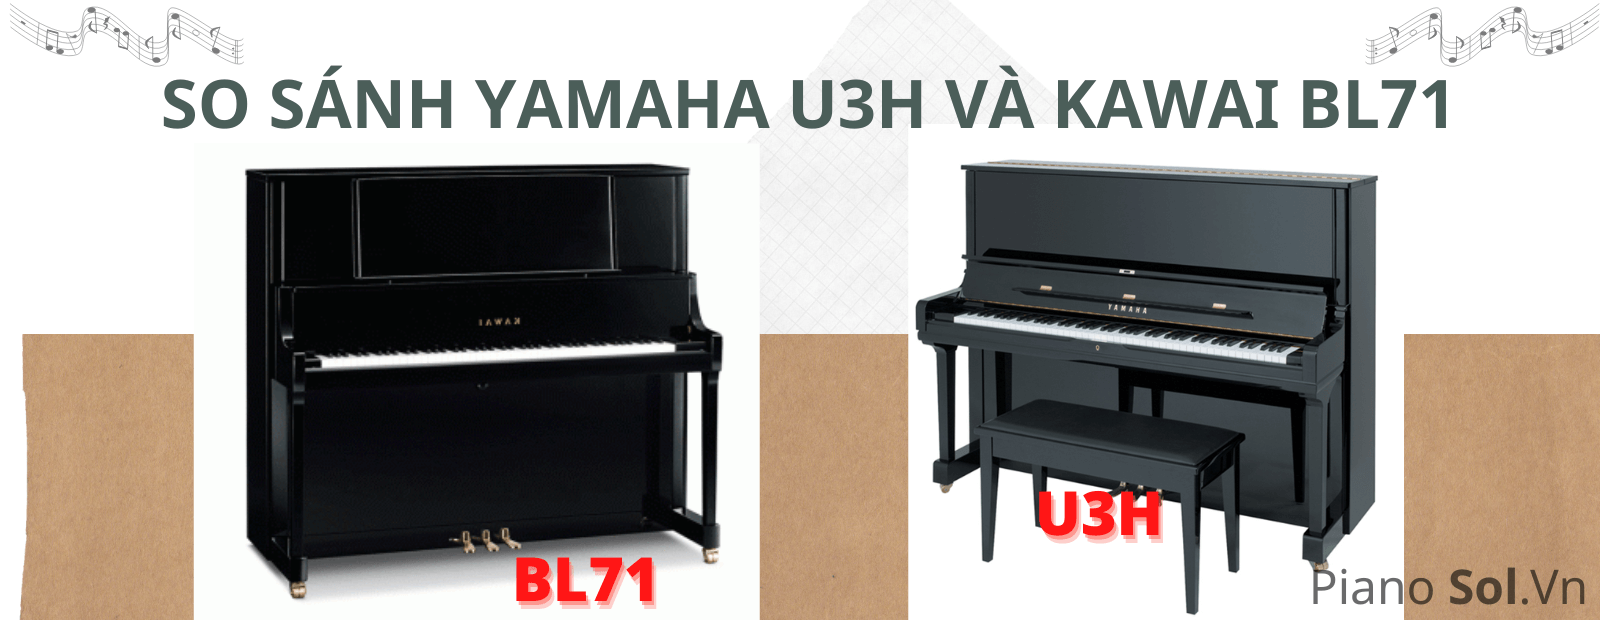 yamaha-u3h-va-kawai-bl71